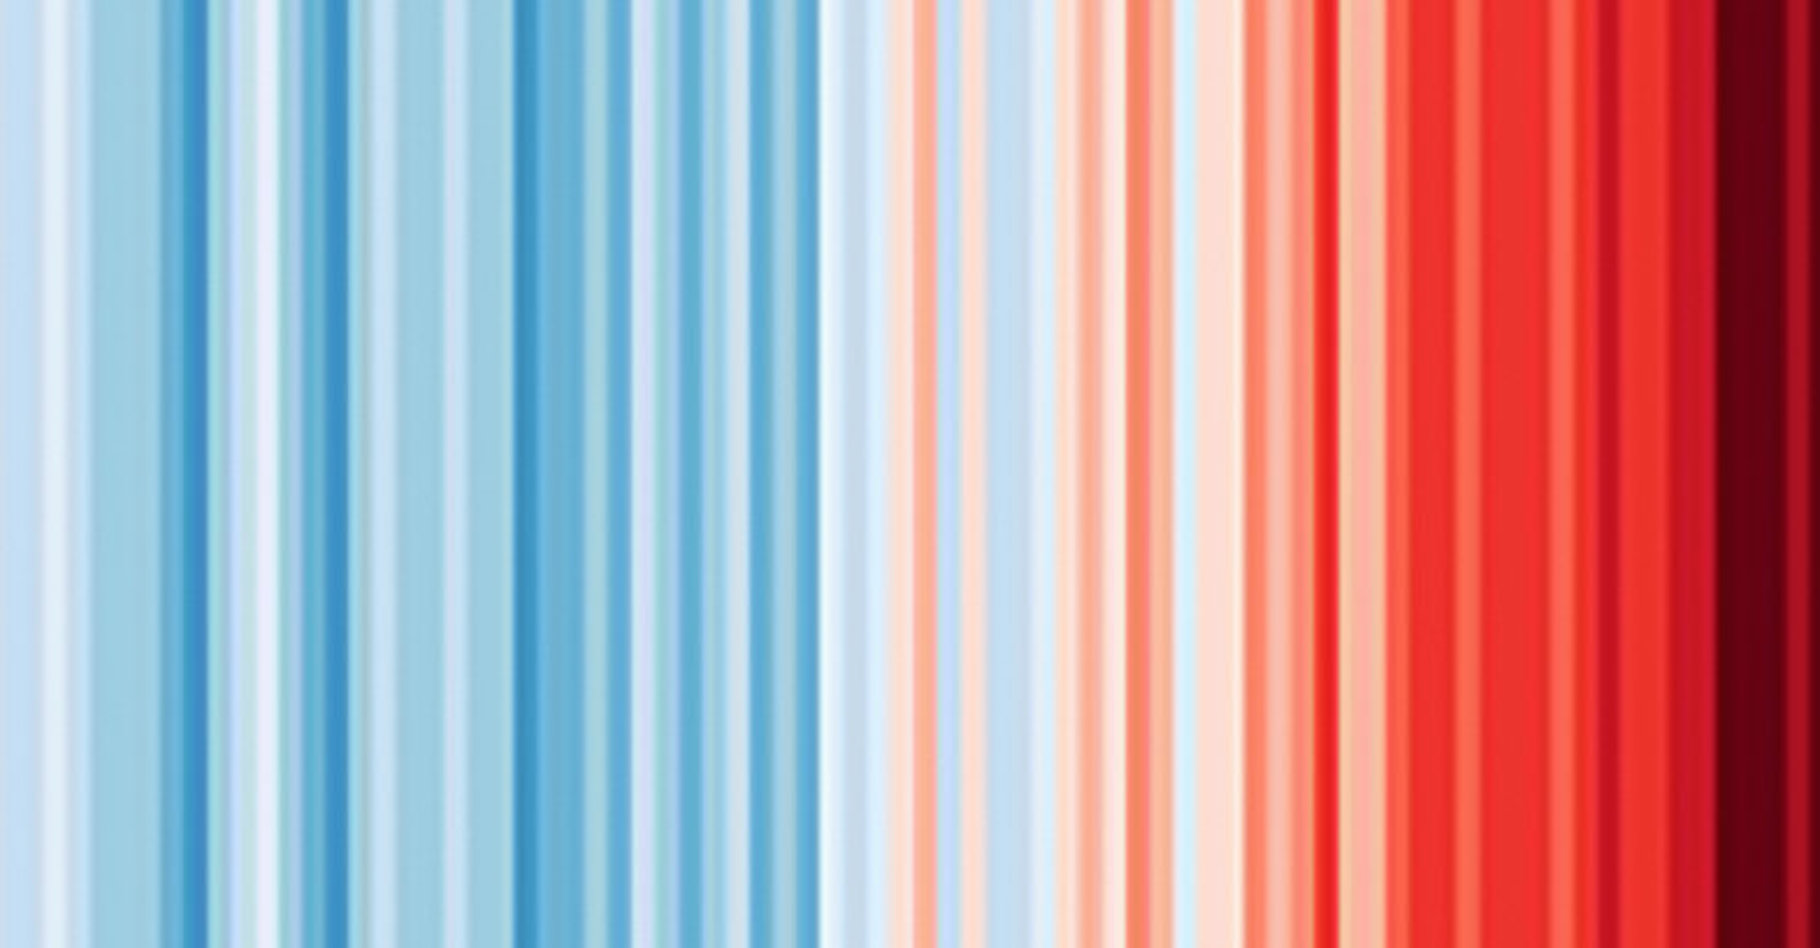 La moyenne des températures enregistrée sur les 20 dernières années est de plus de 1 °C au-dessus des moyennes préindustrielles. © Organisation météorologique mondiale